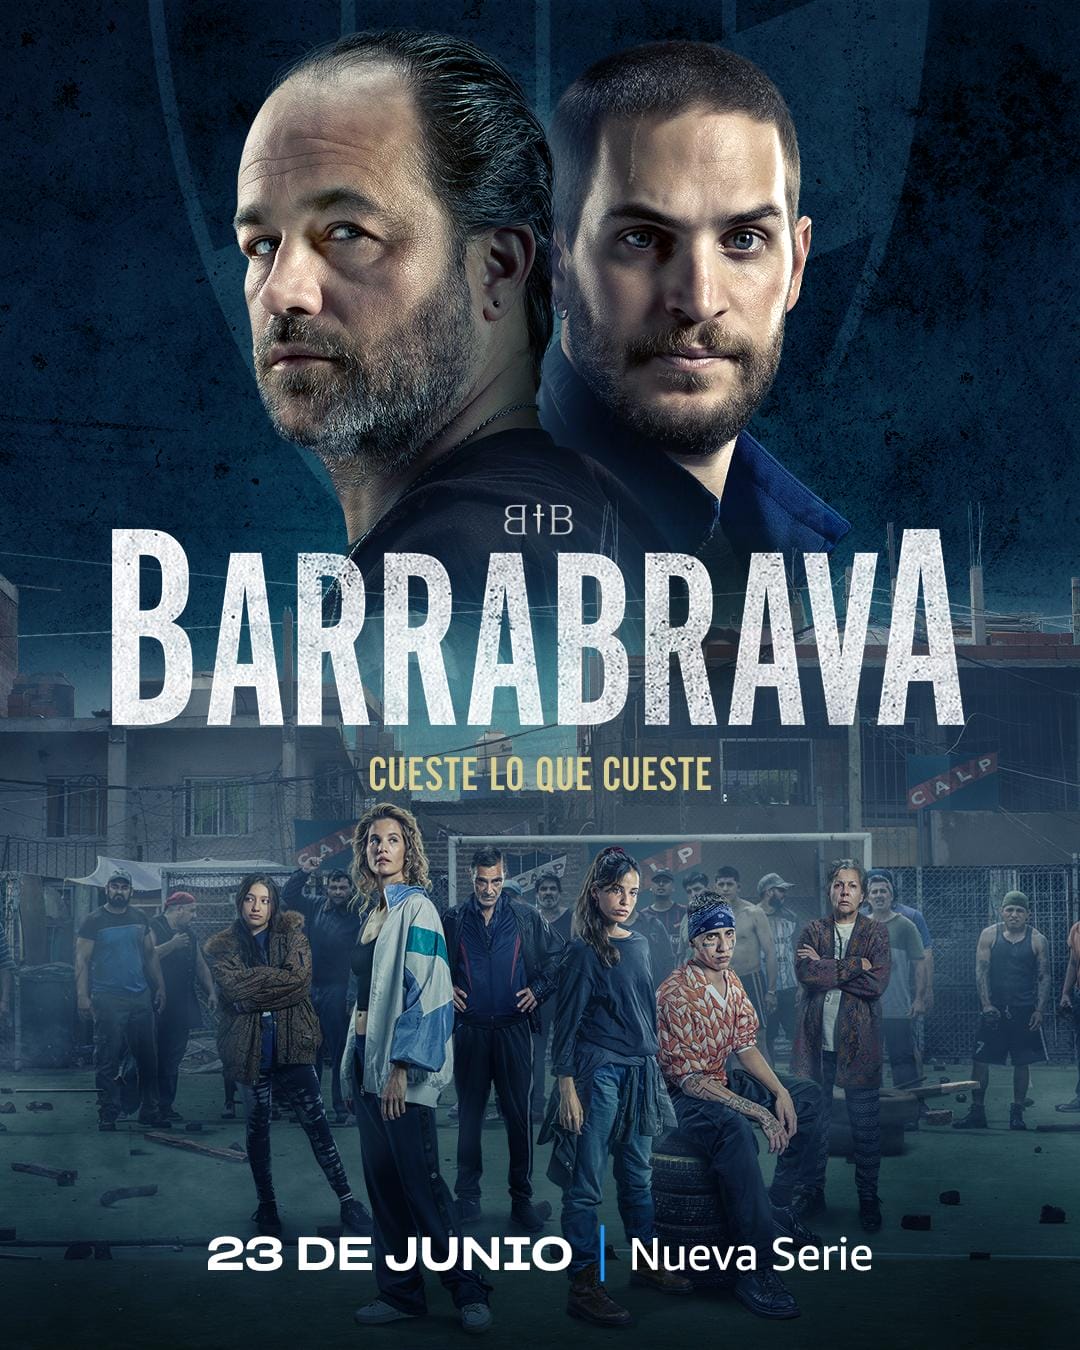 'Barrabrava' (2023) Nueva serie en Amazon Prime Video el 23 de junio